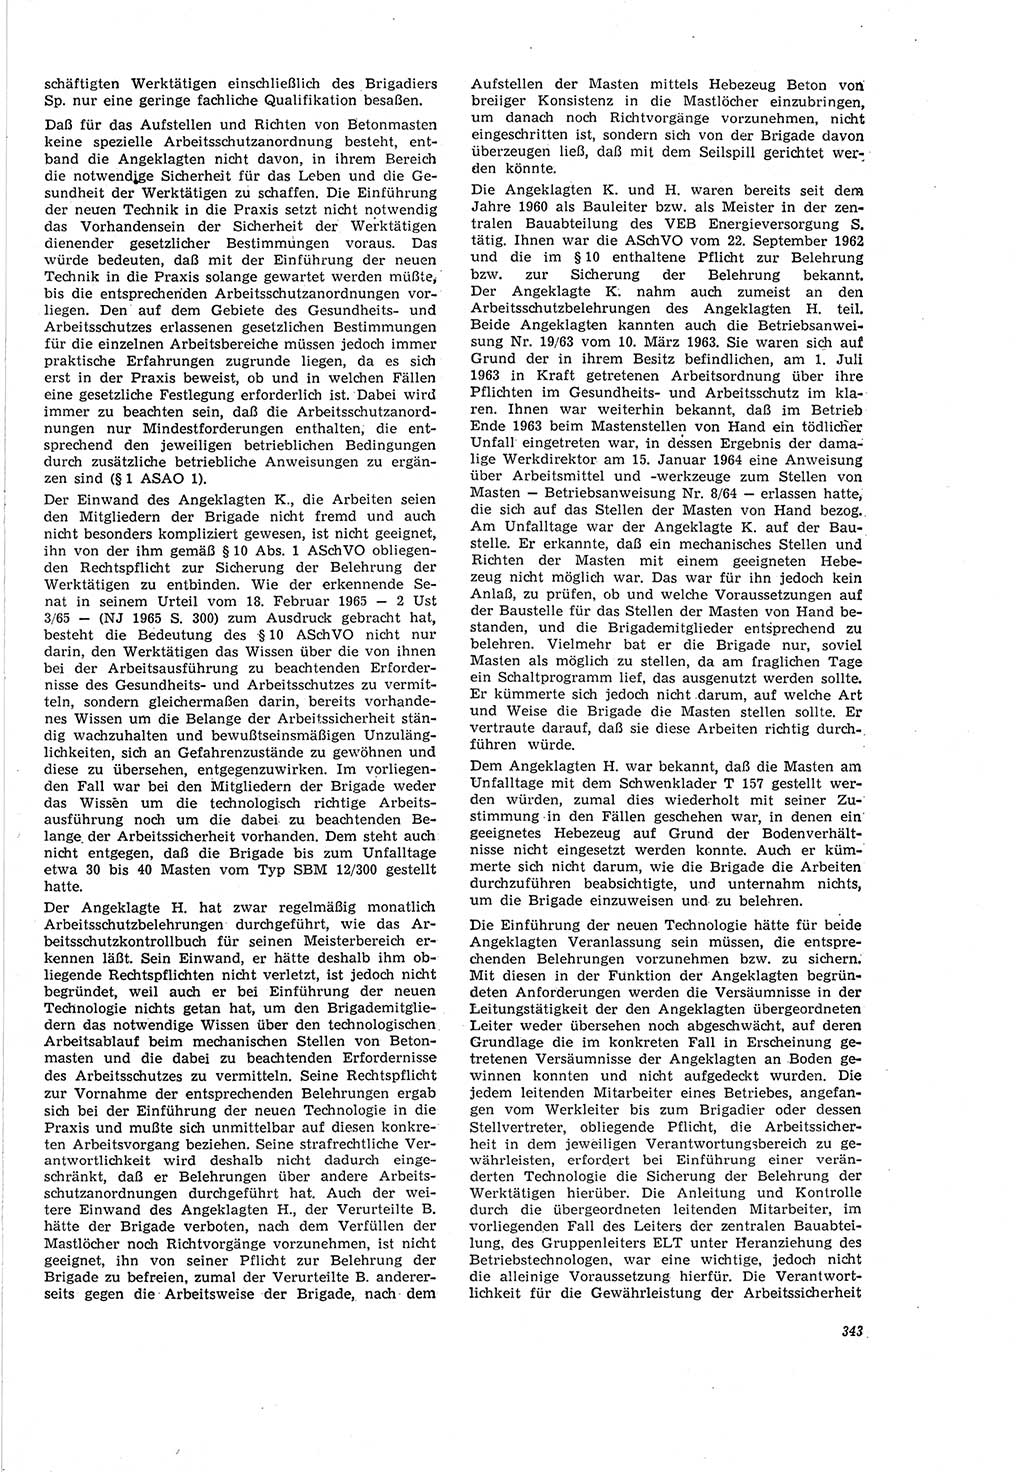 Neue Justiz (NJ), Zeitschrift für Recht und Rechtswissenschaft [Deutsche Demokratische Republik (DDR)], 20. Jahrgang 1966, Seite 343 (NJ DDR 1966, S. 343)